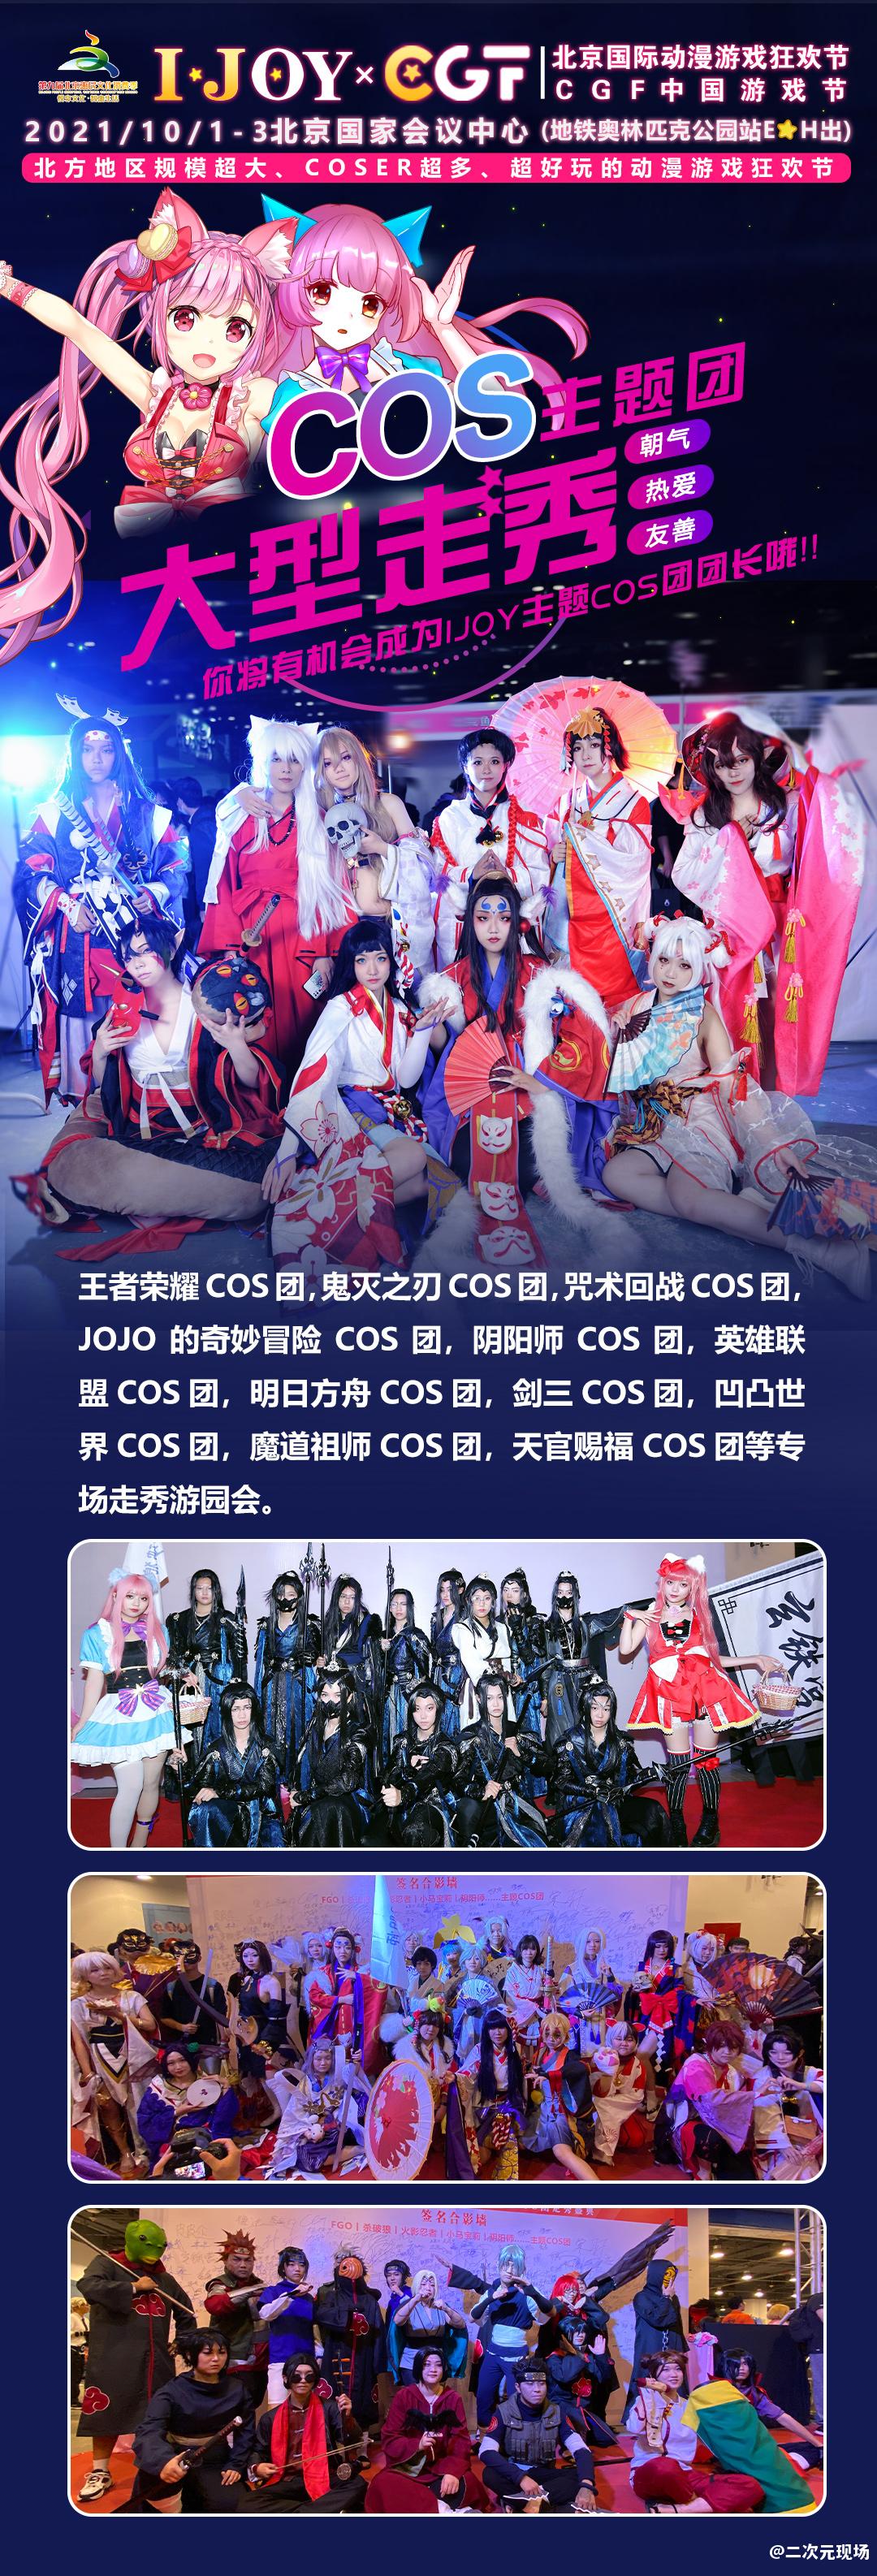 国庆第五届IJOY×CGF北京大型二次元狂欢节